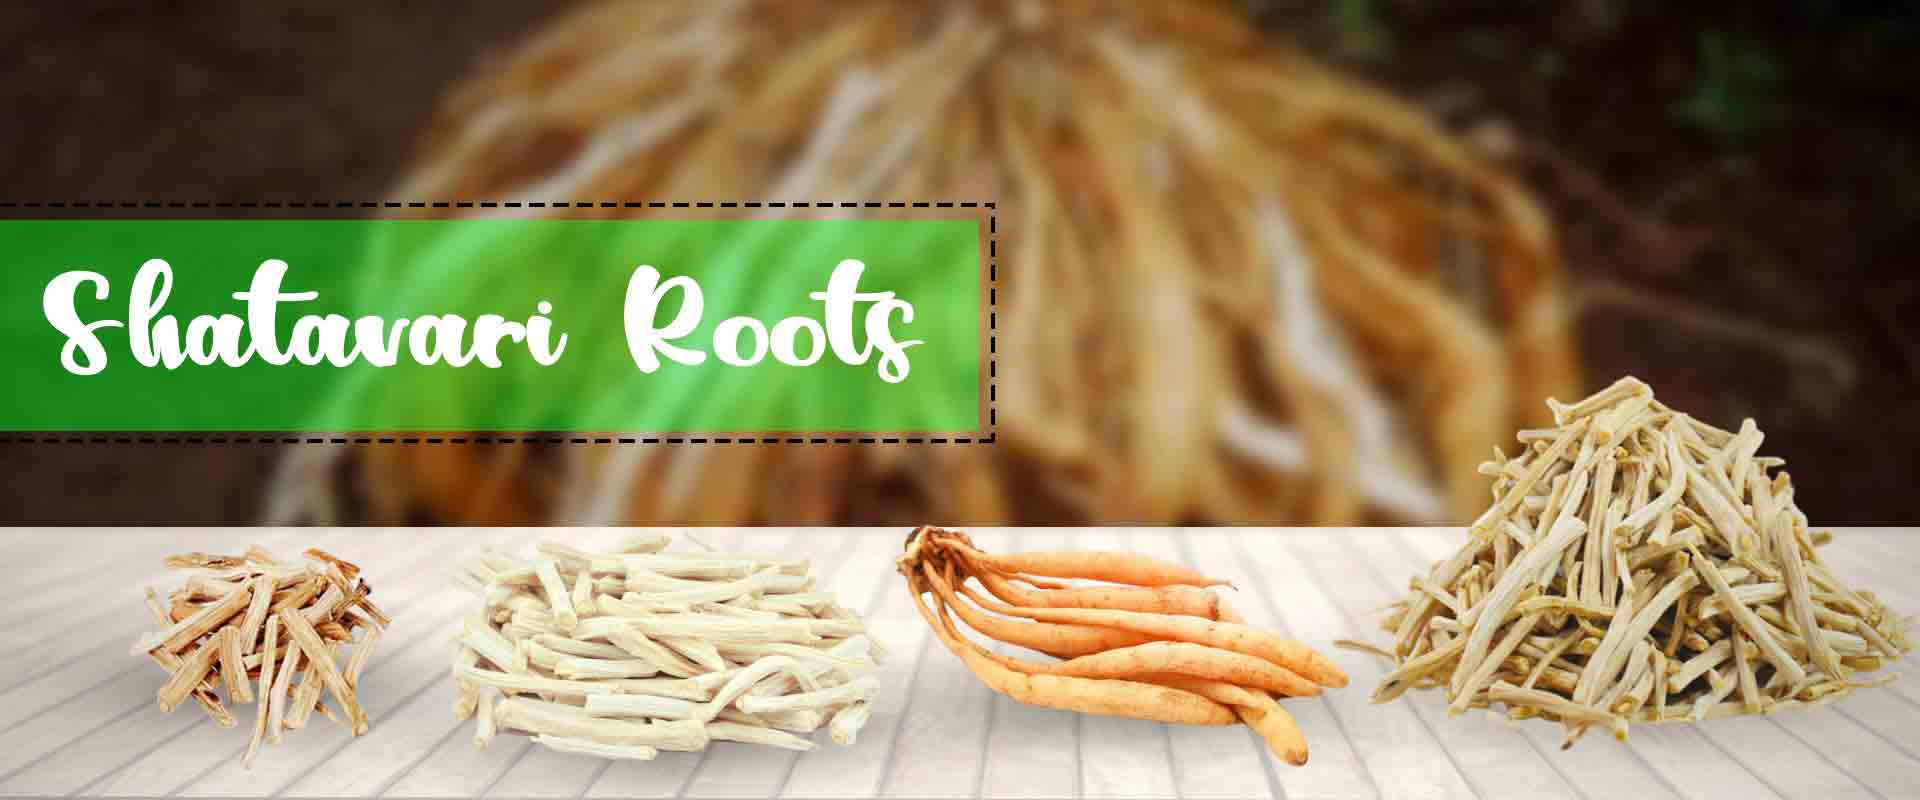 Shatavari Root Suppliers 